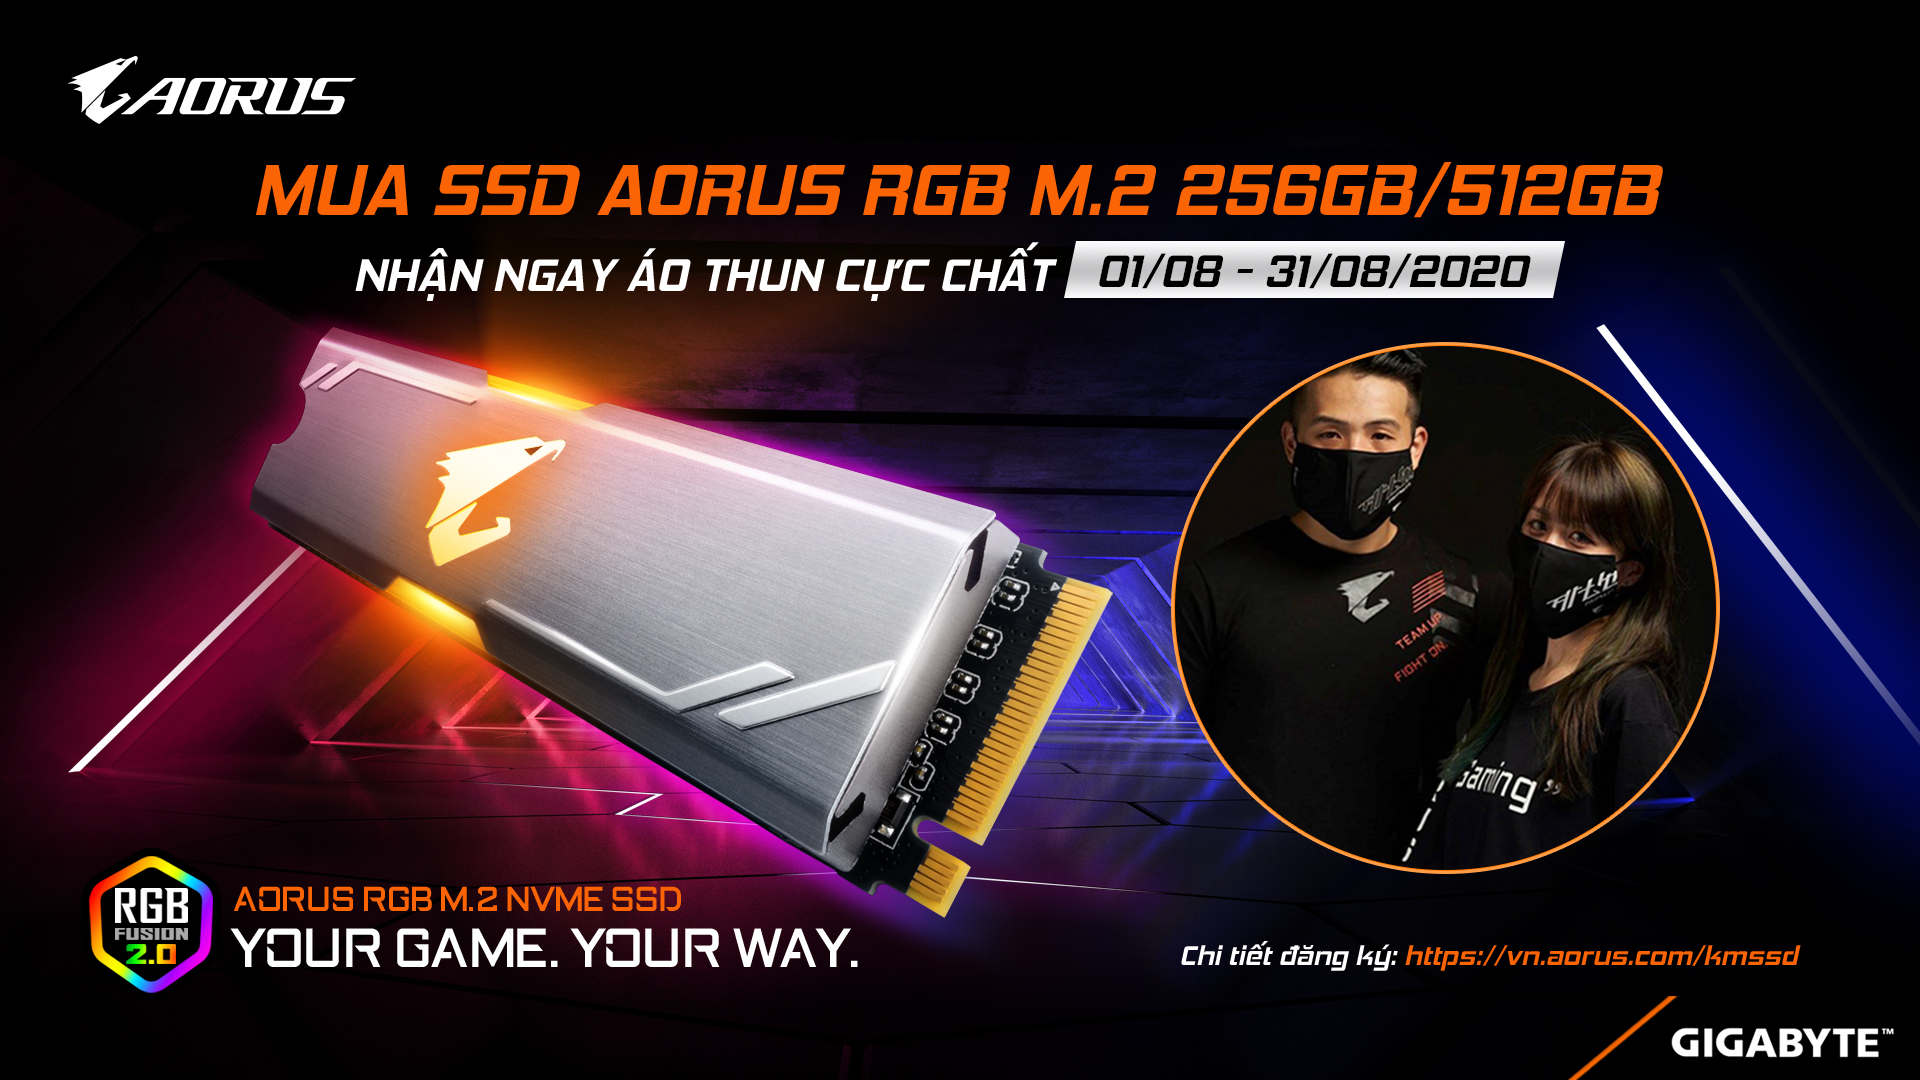 MUA SSD AORUS RGB M2 256GB / 512GB - NHẬN ÁO THUN CỰC CHẤT